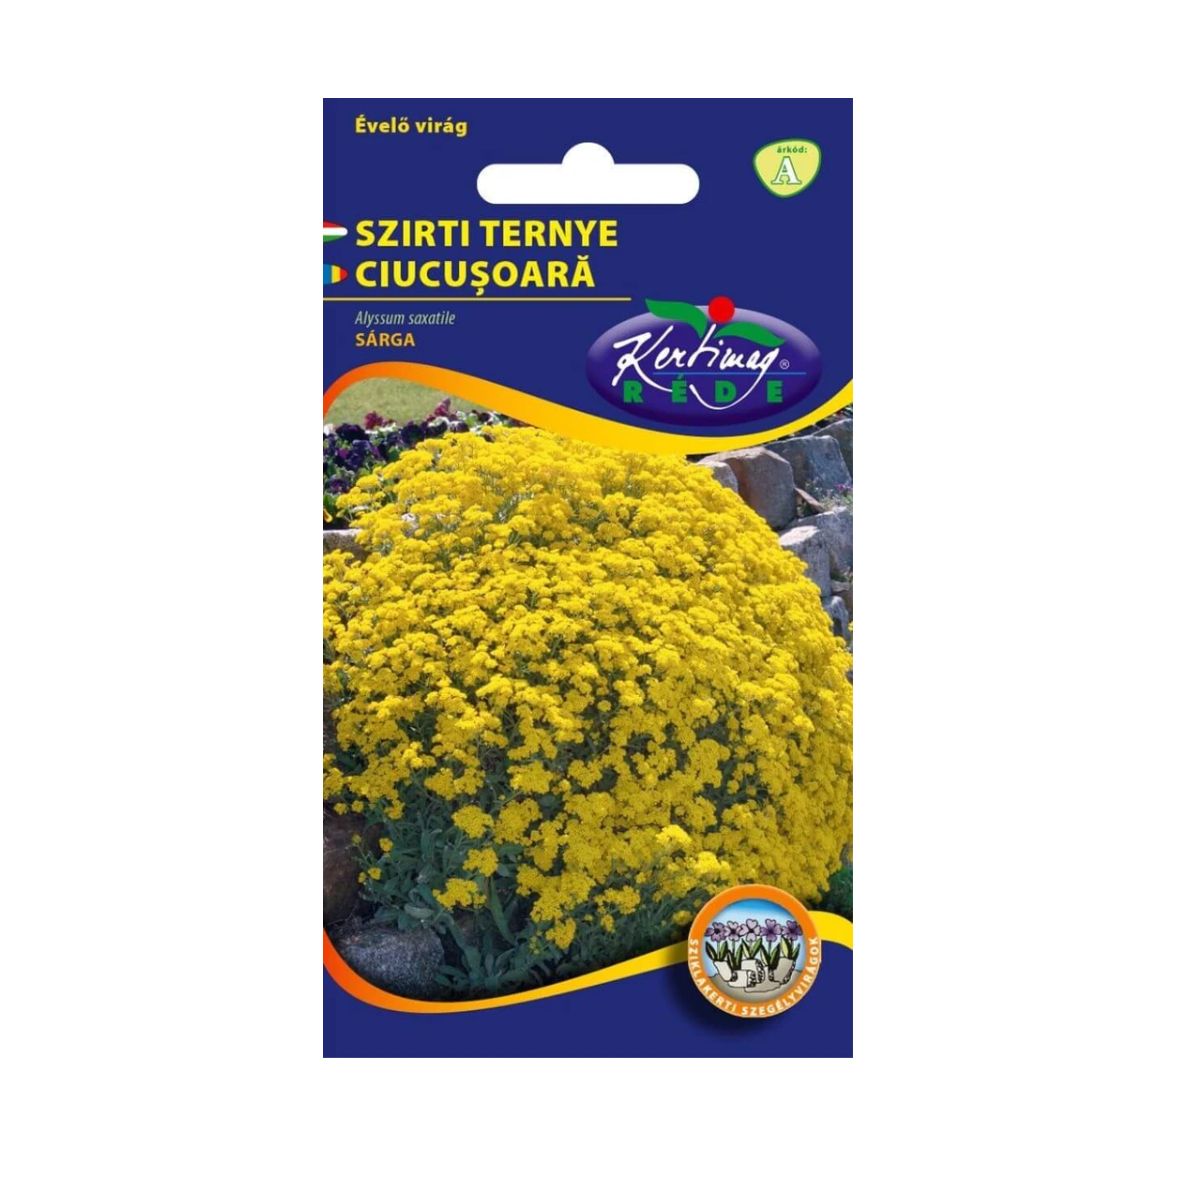 Seminte flori - Seminte de CIUCUSOARA galben, KERTIMAG, hectarul.ro